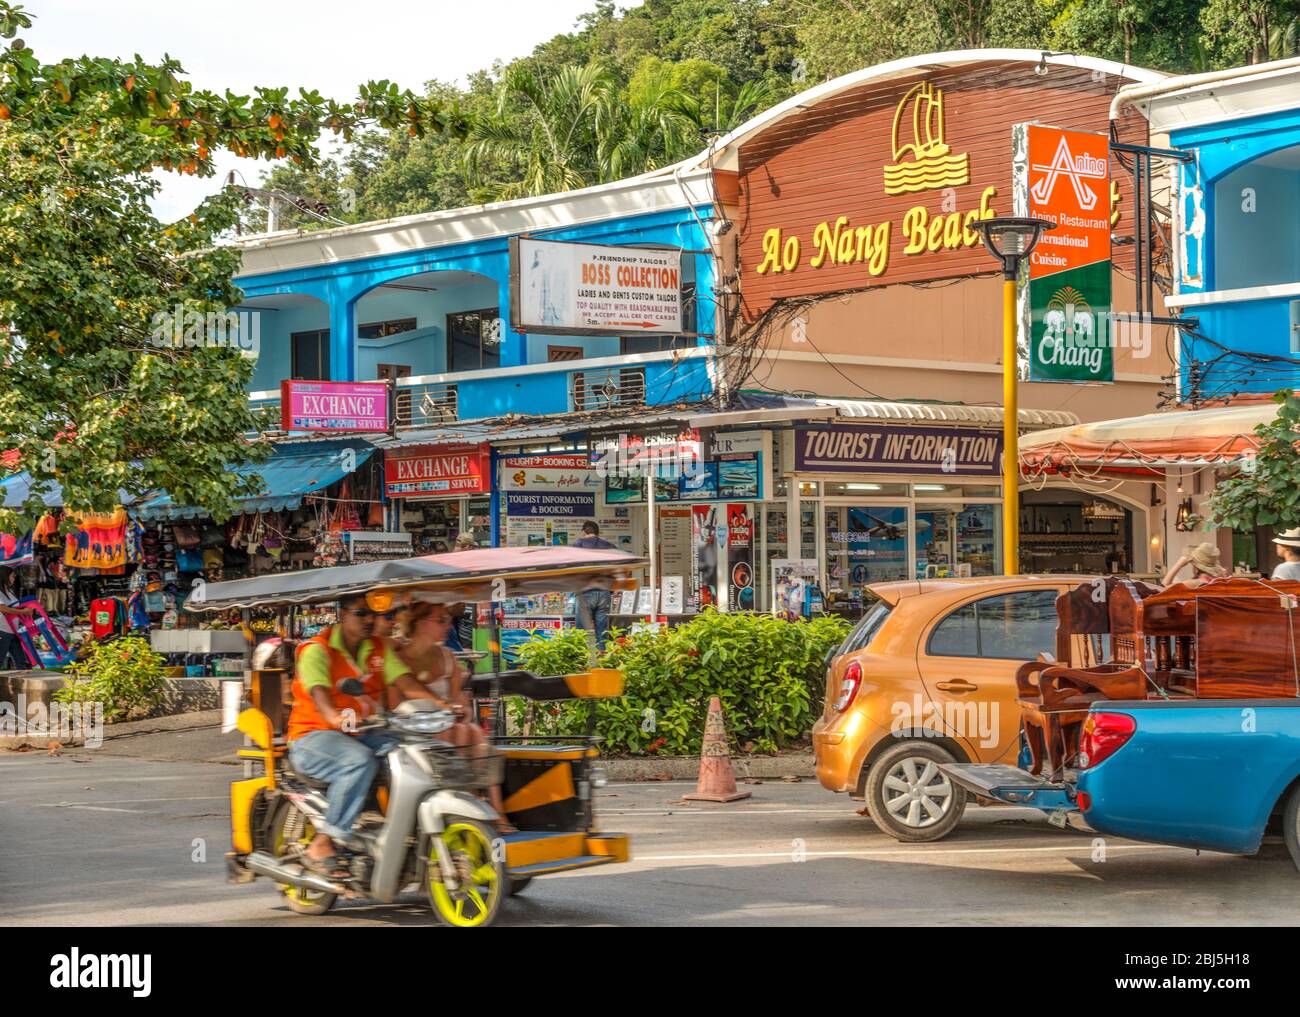 Busy Shopping Street at the beach parade of Ao Nang Beach, Krabi, Thailand Stock Photo